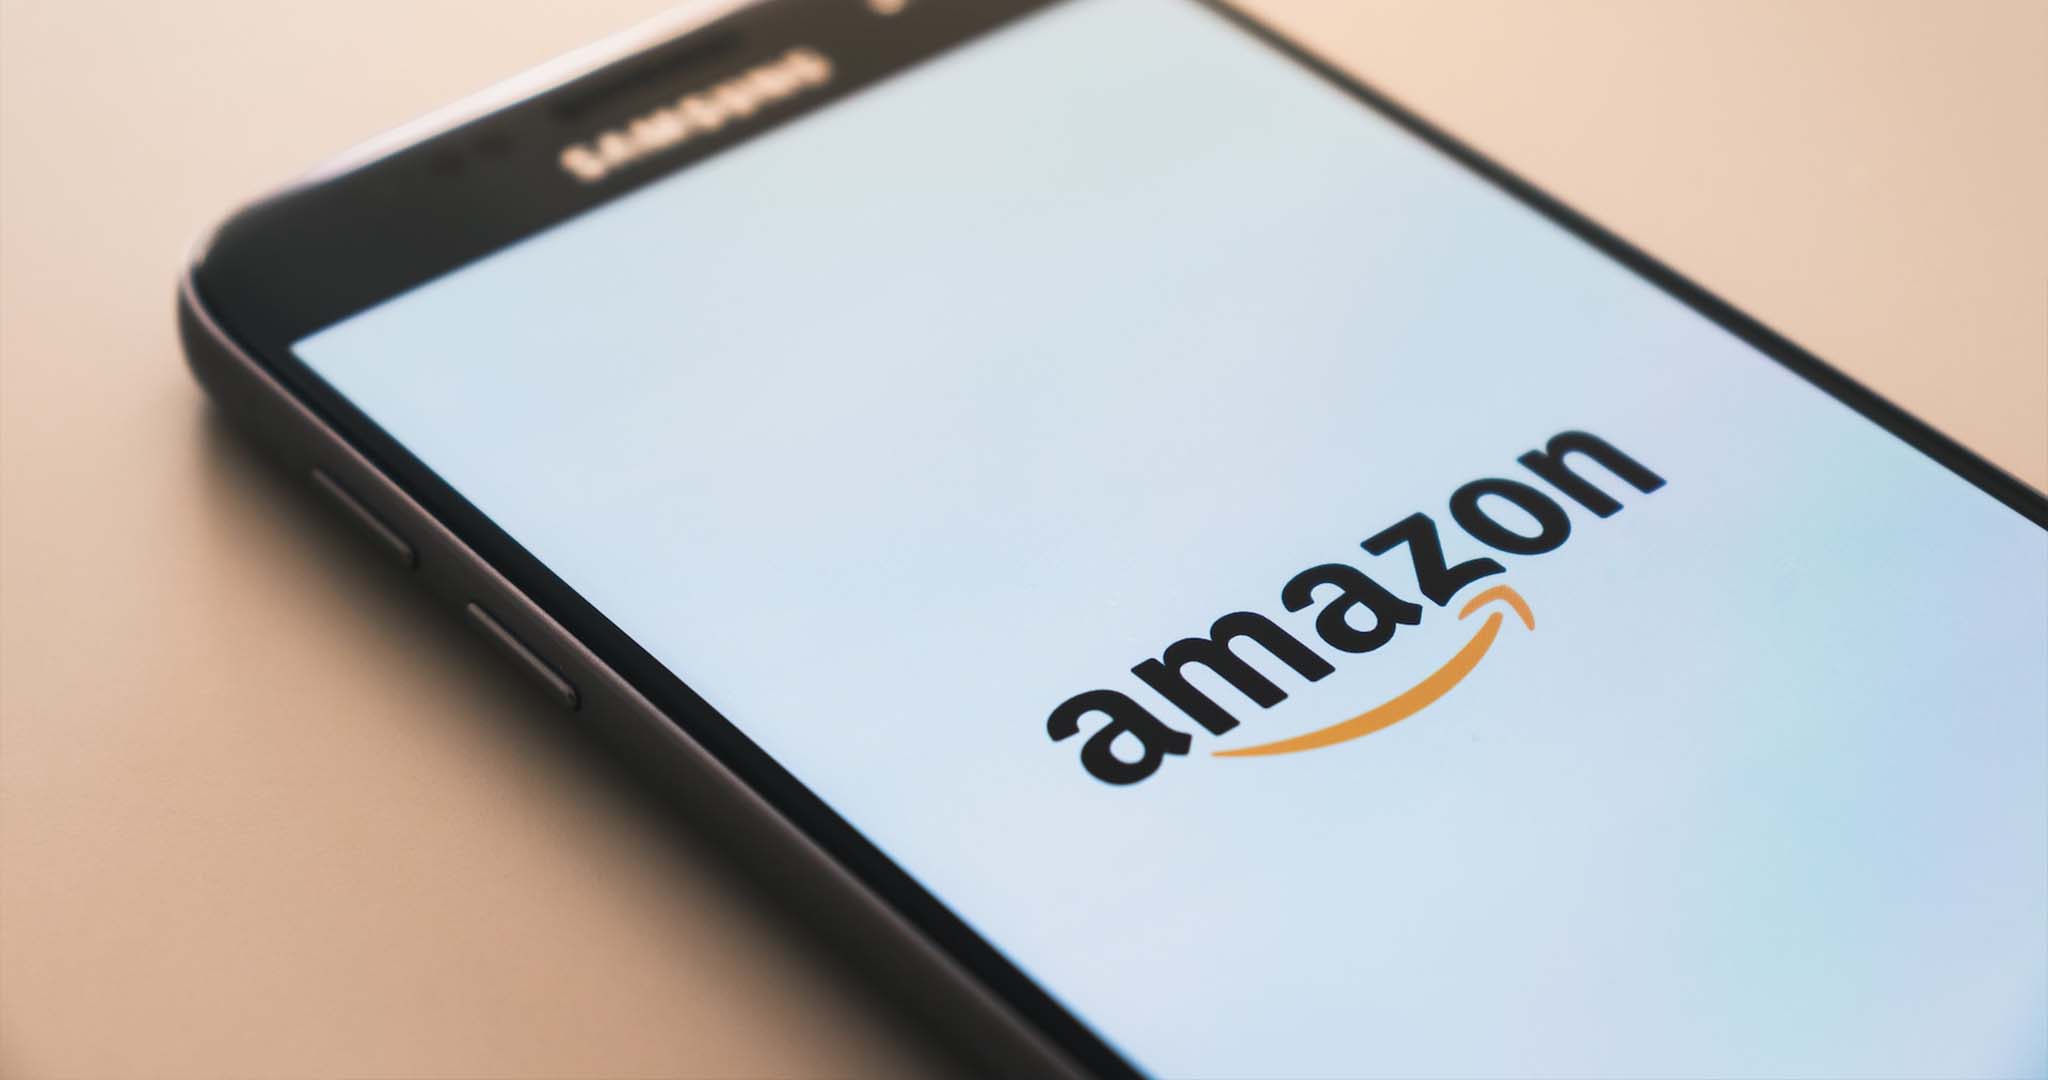 "Amazon" écrit sur un téléphone